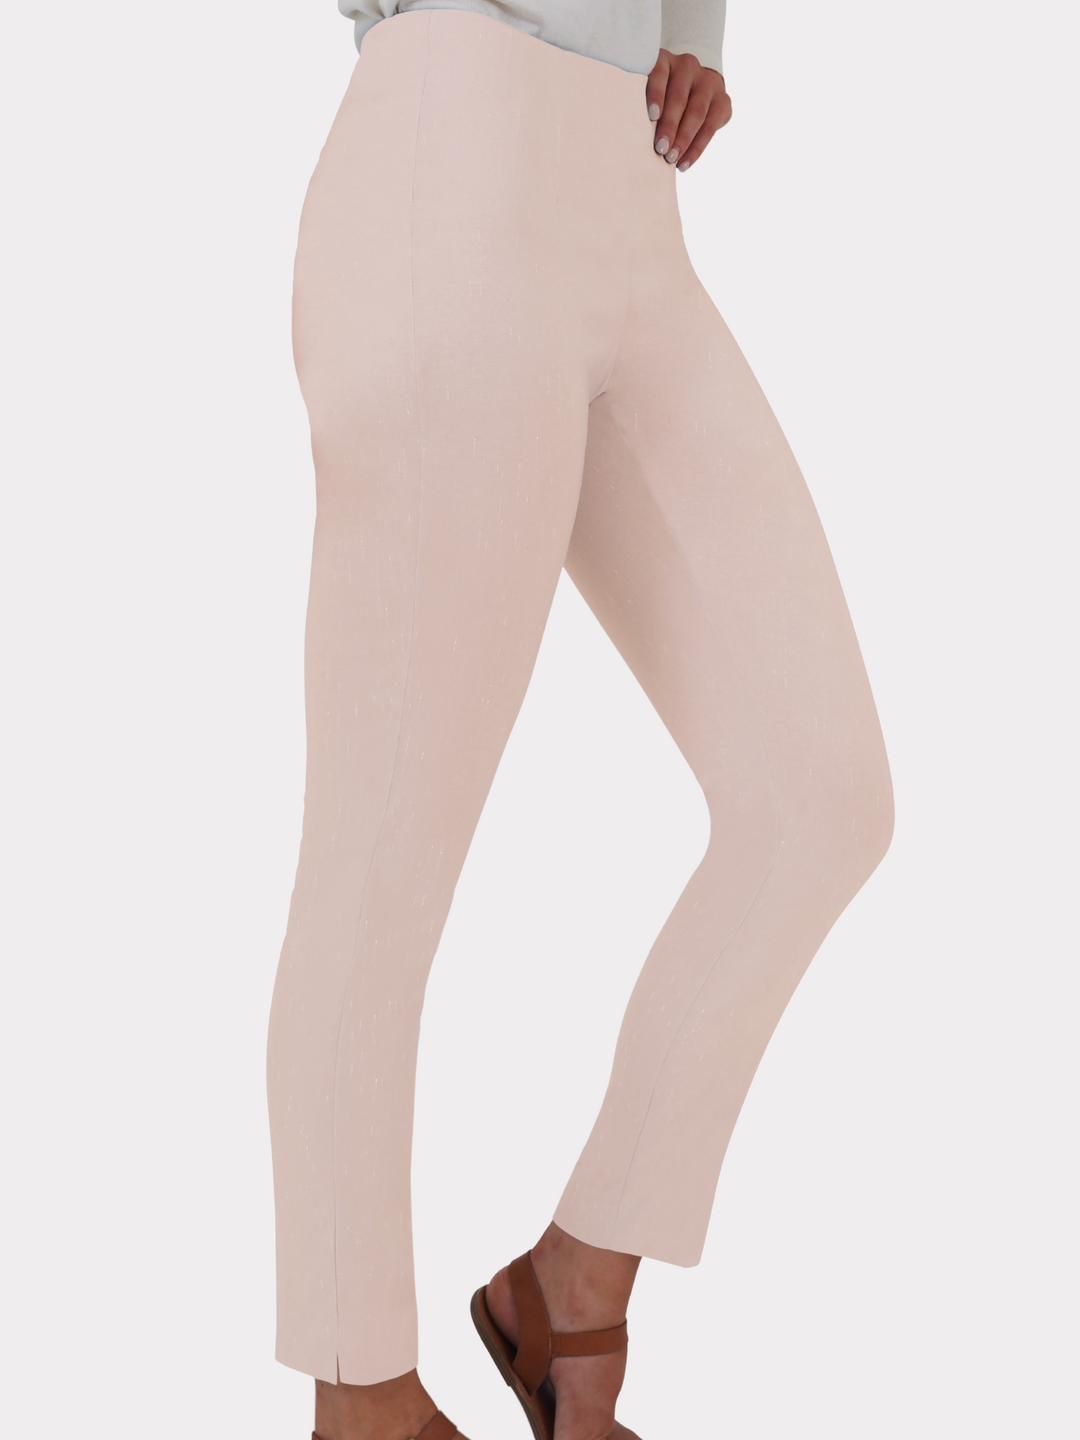 Long Dupioni Stretch Pants - New Colors